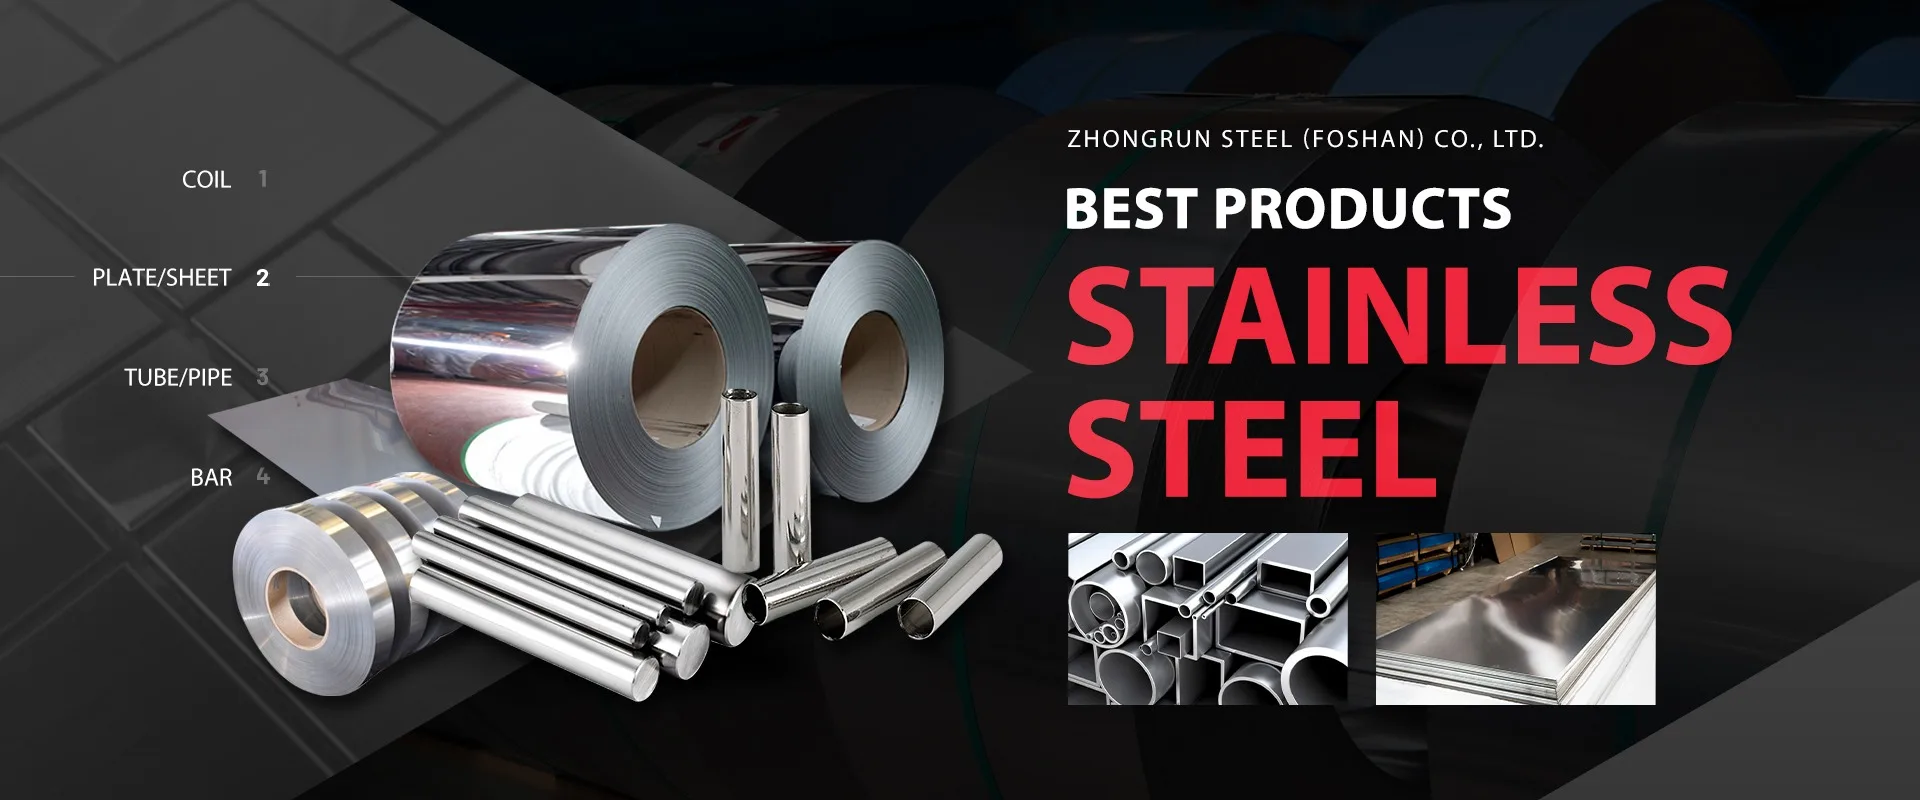 Zhongrun Steel (Foshan) Co., Ltd. - Stainless Steel Coil, Stainless ...